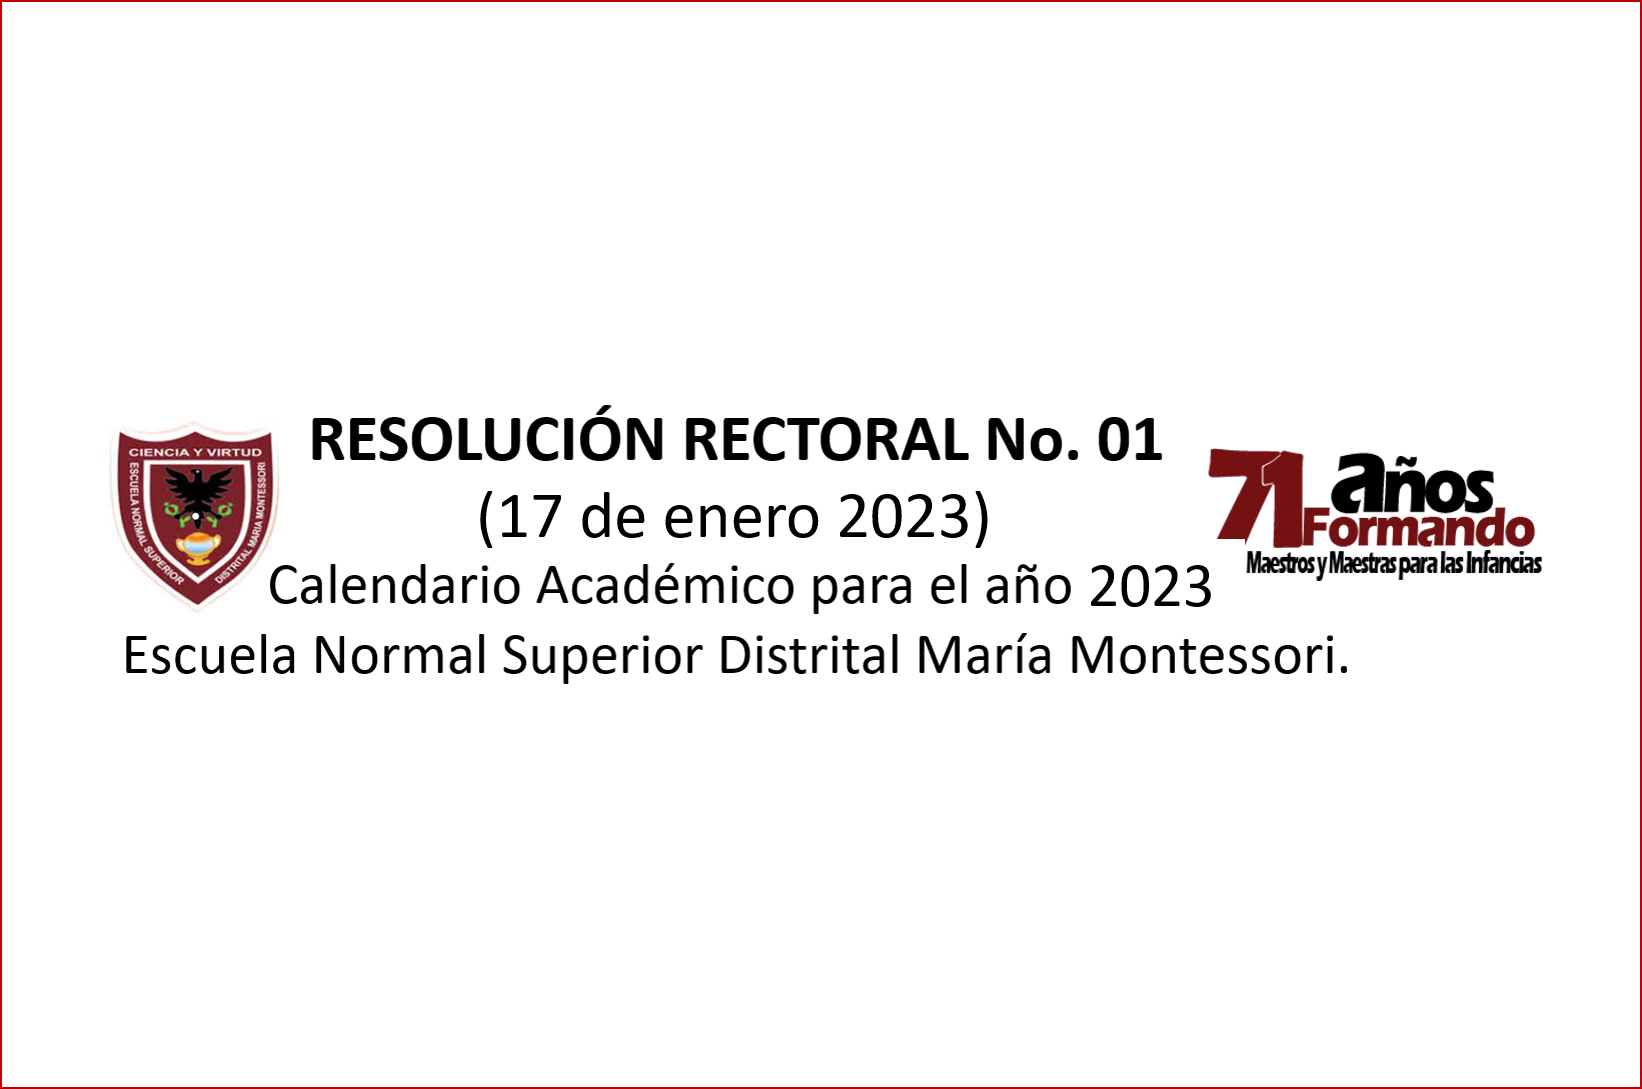 RESOLUCIÓN RECTORAL No. 1 - CALENDARIO ESCOLAR 2023